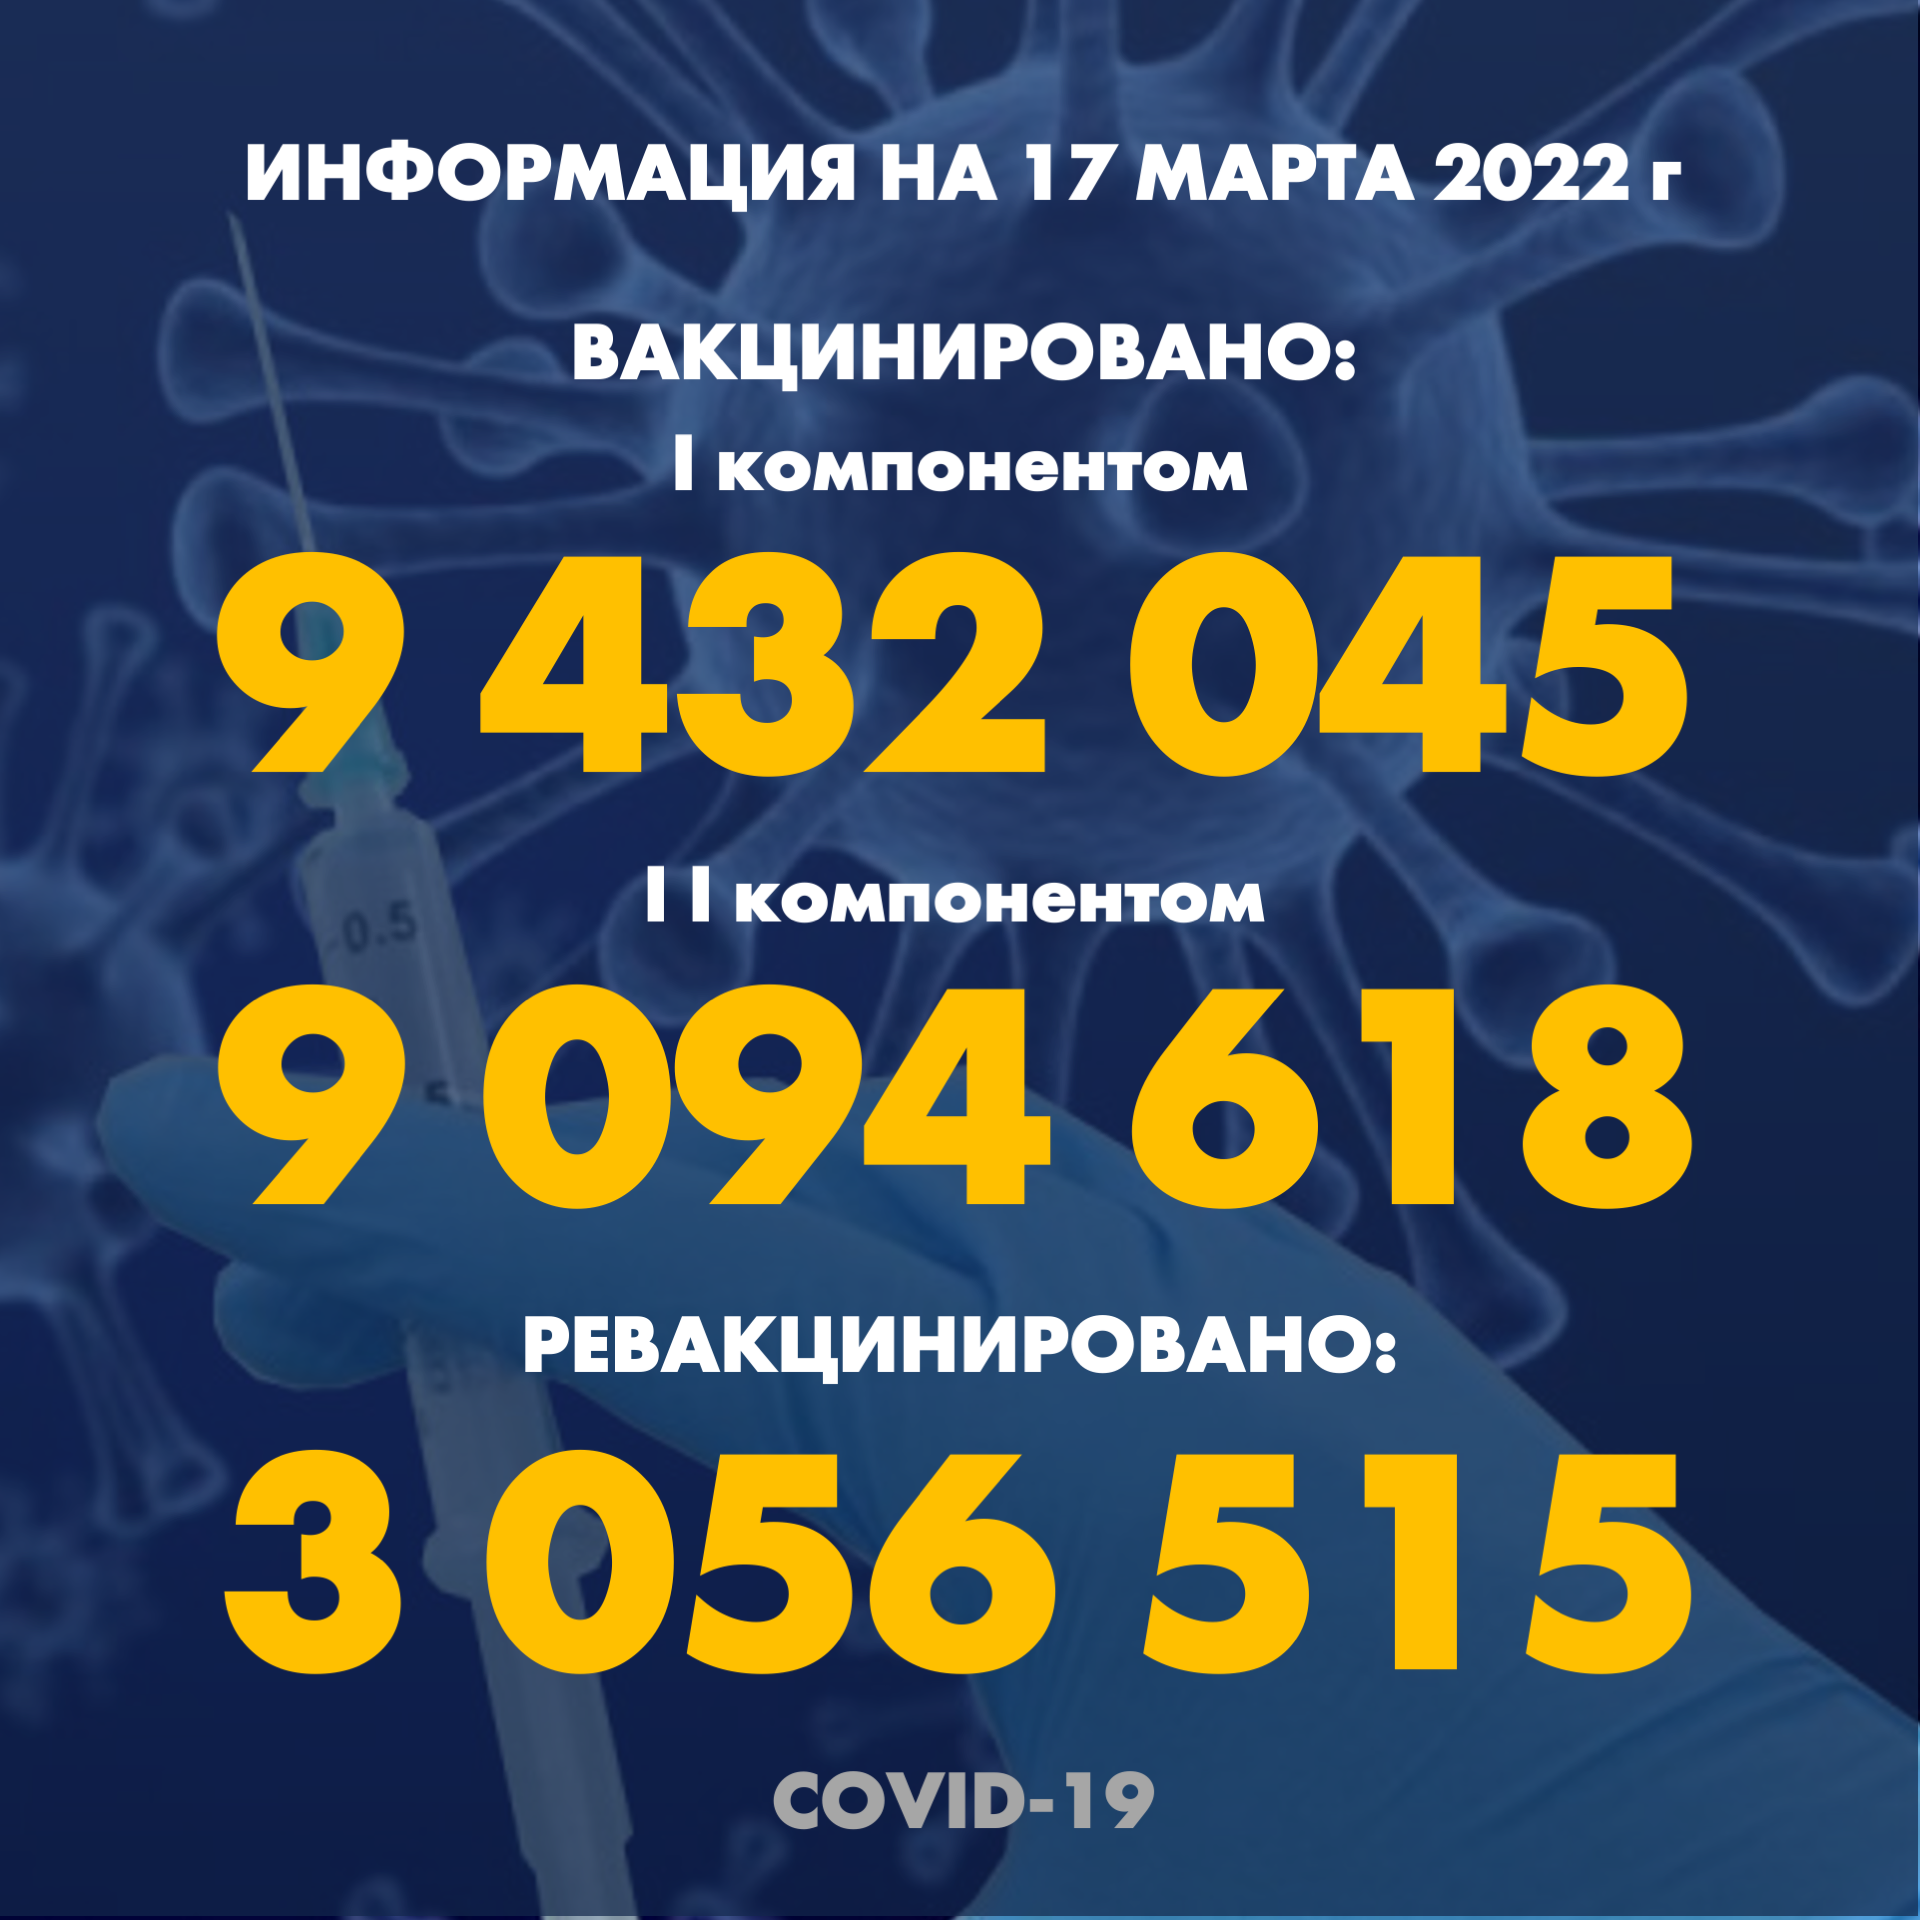 I компонентом 9 432 045 человек провакцинировано в Казахстане на 17 марта 2022 г, II компонентом 9 094 618 человек. Ревакцинировано – 3 056 515